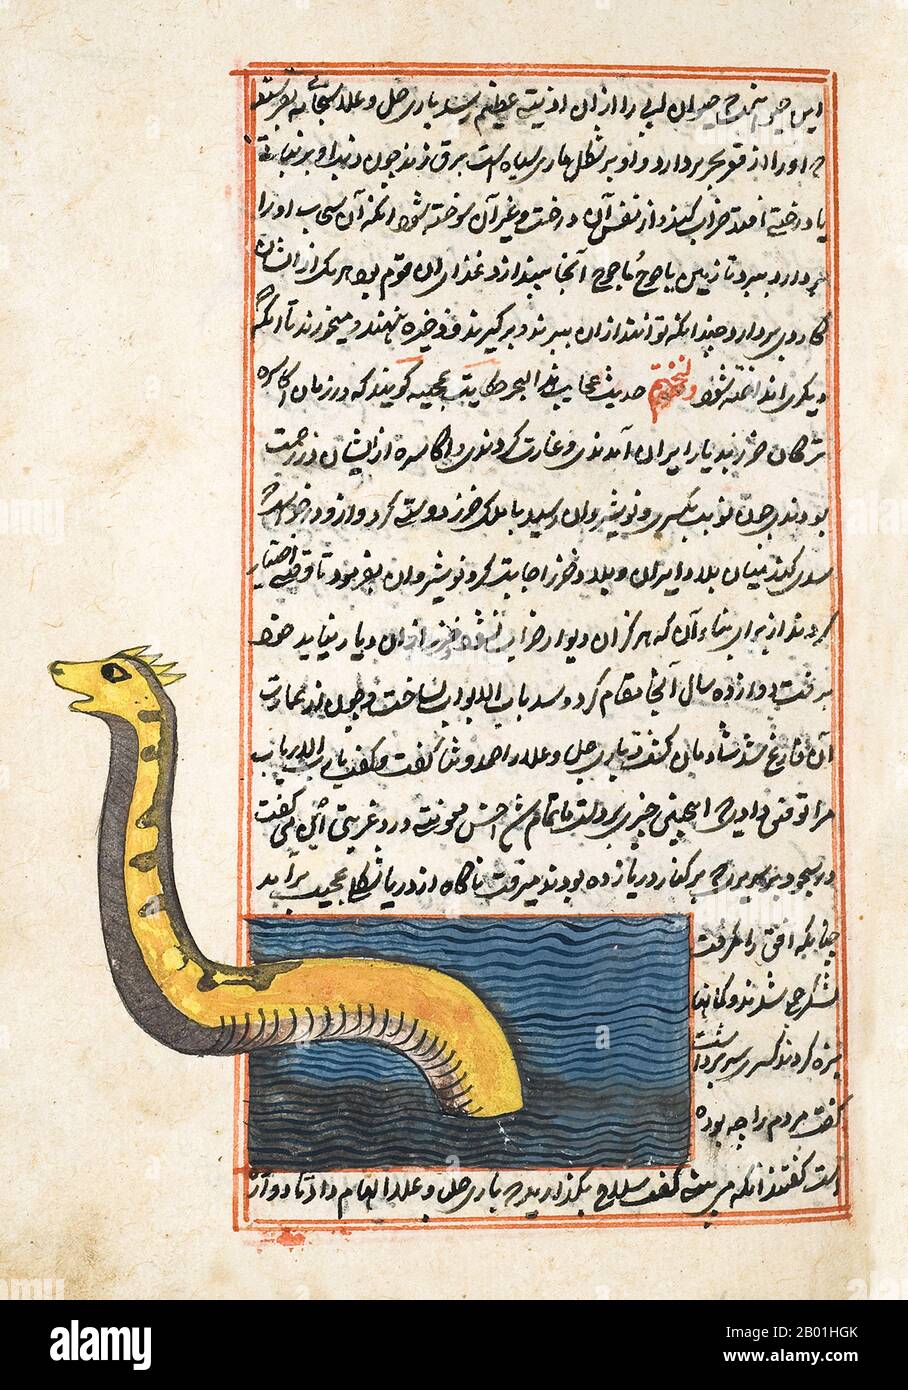 Iran/Persien: Illustration von Zakarīyā ibn Muḥammad al-Qazwīnī, „Ajā’ib al-makhlūqāt wa-gharā’ib al-mawjūdāt (Wunder der geschaffenen Dinge und wundersame Aspekte der bestehenden Dinge) c. 1250 CE. Abu Yahya Zakariya' ibn Muhammad al-Qazwini (1203-1283) war ein persischer Arzt, Astronome, Geografin und Proto-Science-Fiction-Autor. Er wurde in der persischen Stadt Qazvin geboren und diente als Rechtsexperte und Richter (qadhi) an mehreren Orten in Persien und Bagdad. Er reiste durch Mesopotamien und Syrien und betrat schließlich den Kreis, der vom Gouverneur von Bagdad bevormundet wurde. Stockfoto